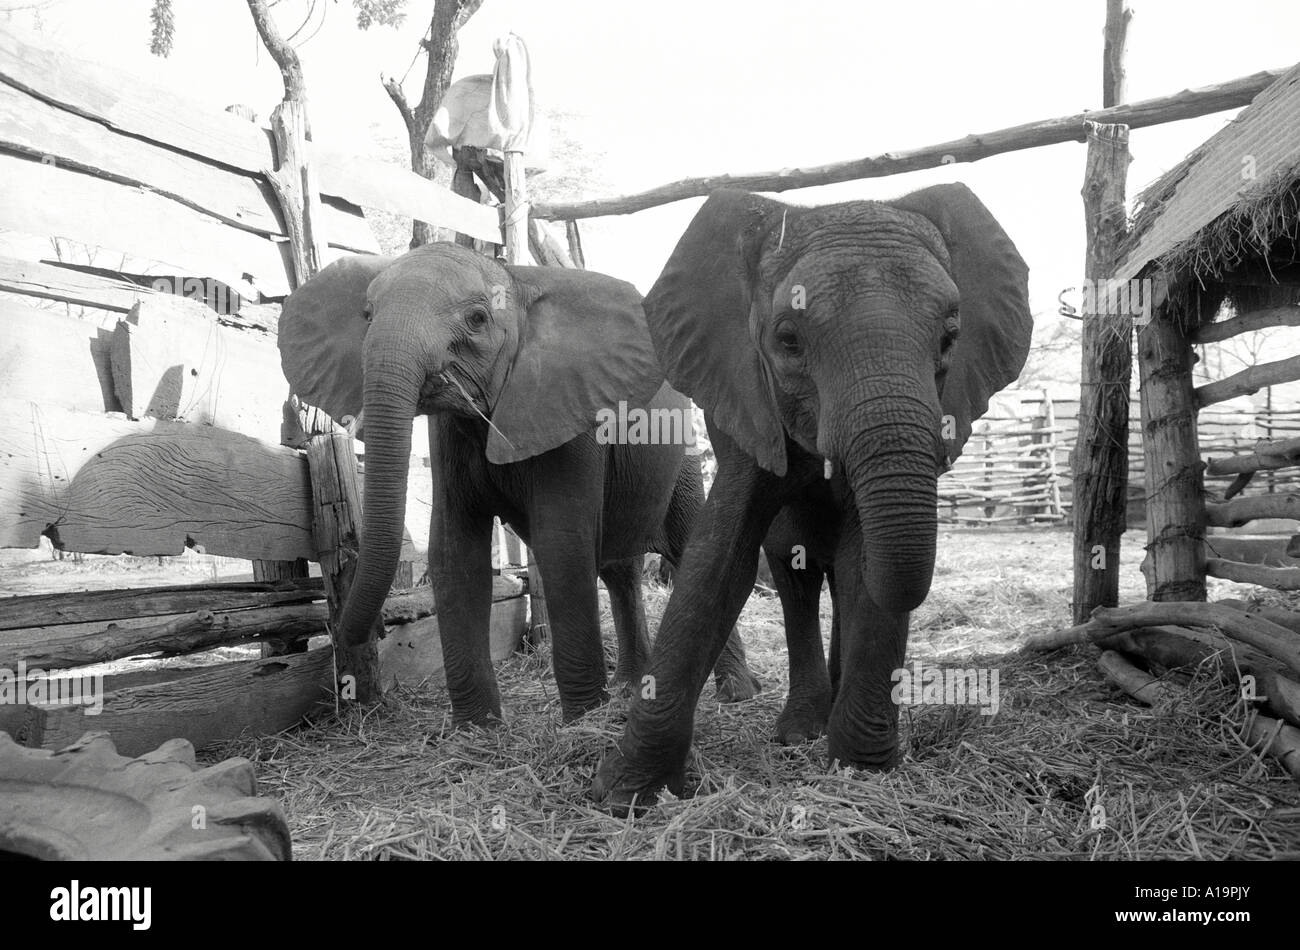 B/W d'éléphants protégés dans une enceinte de ferme, sauvée de la nature frappée par la sécheresse, à retourner quand les pluies viennent. Cheredze, Zimbabwe Banque D'Images